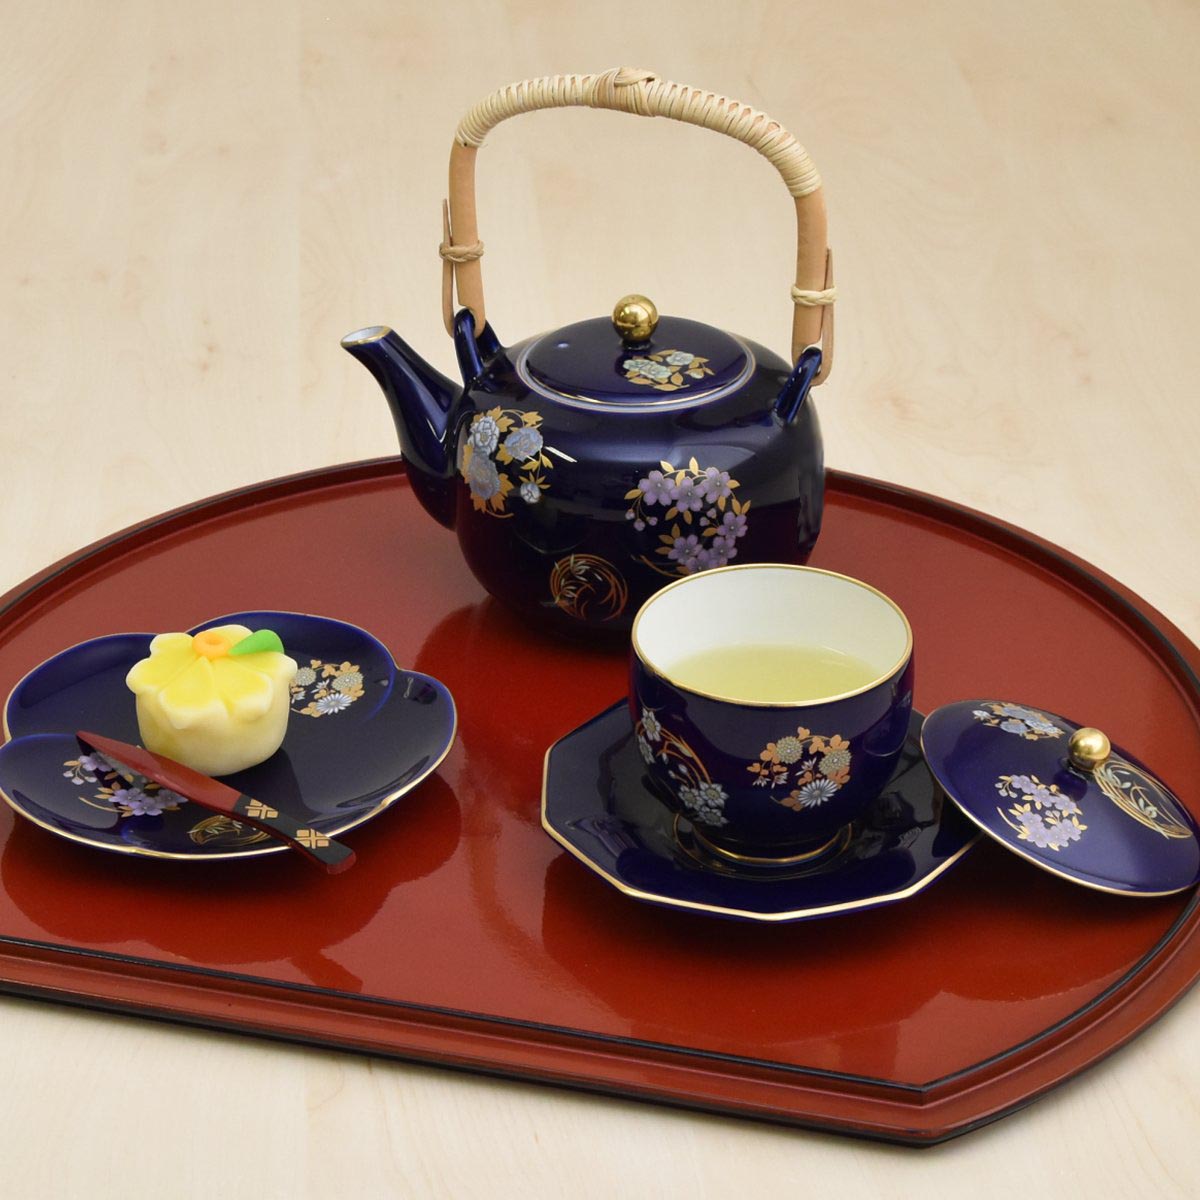 おそろいの小皿（別売り）に和菓子をのせてお茶の時間を楽しんでいただけます。茶托も別売りです。